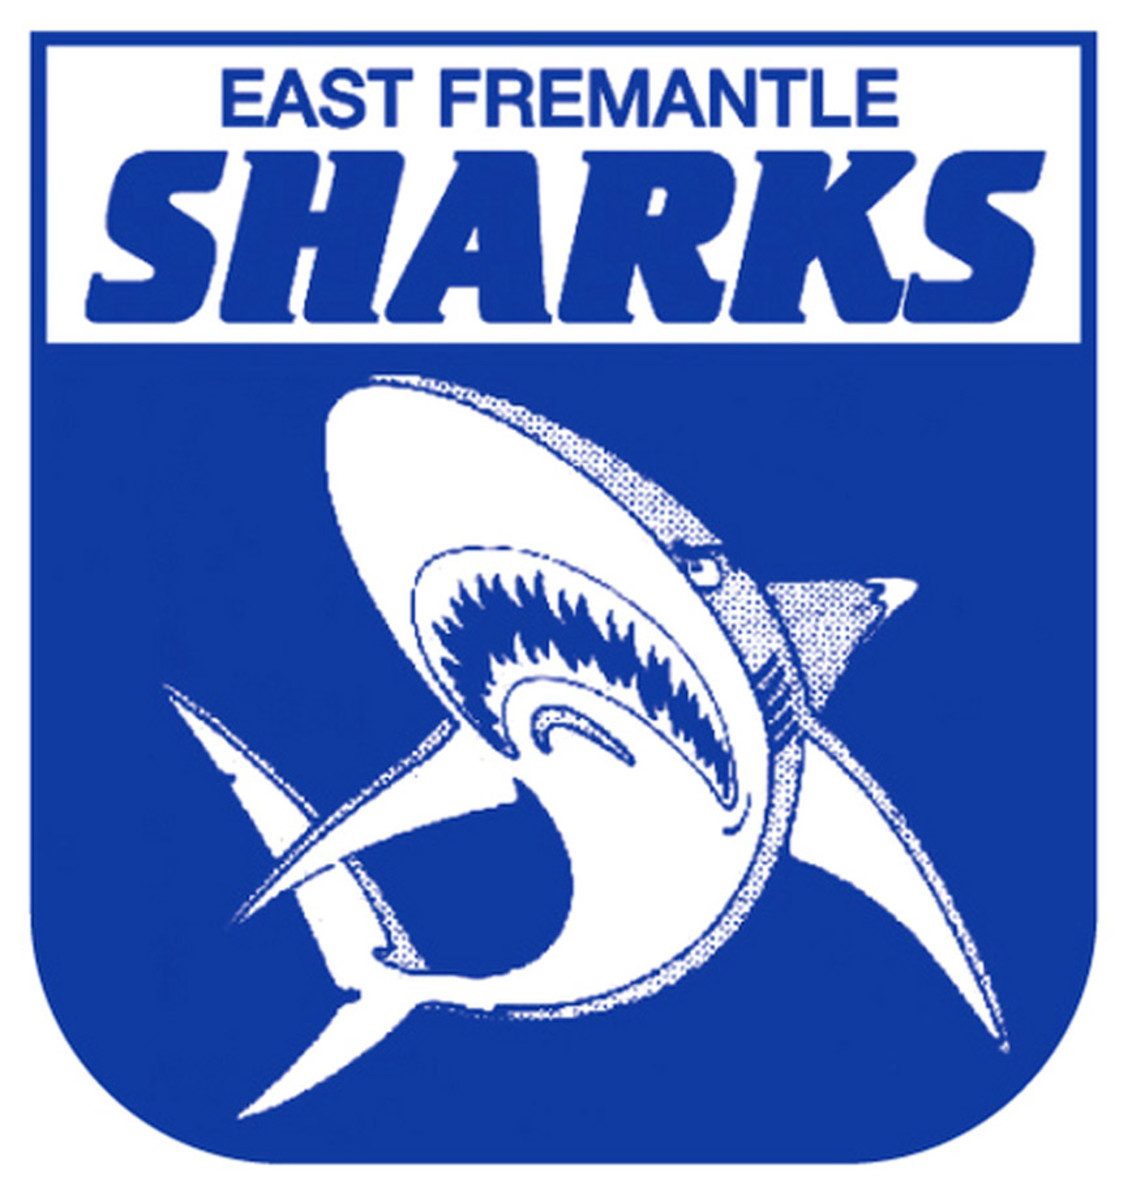 east-fremantle-sharks-logo.jpg